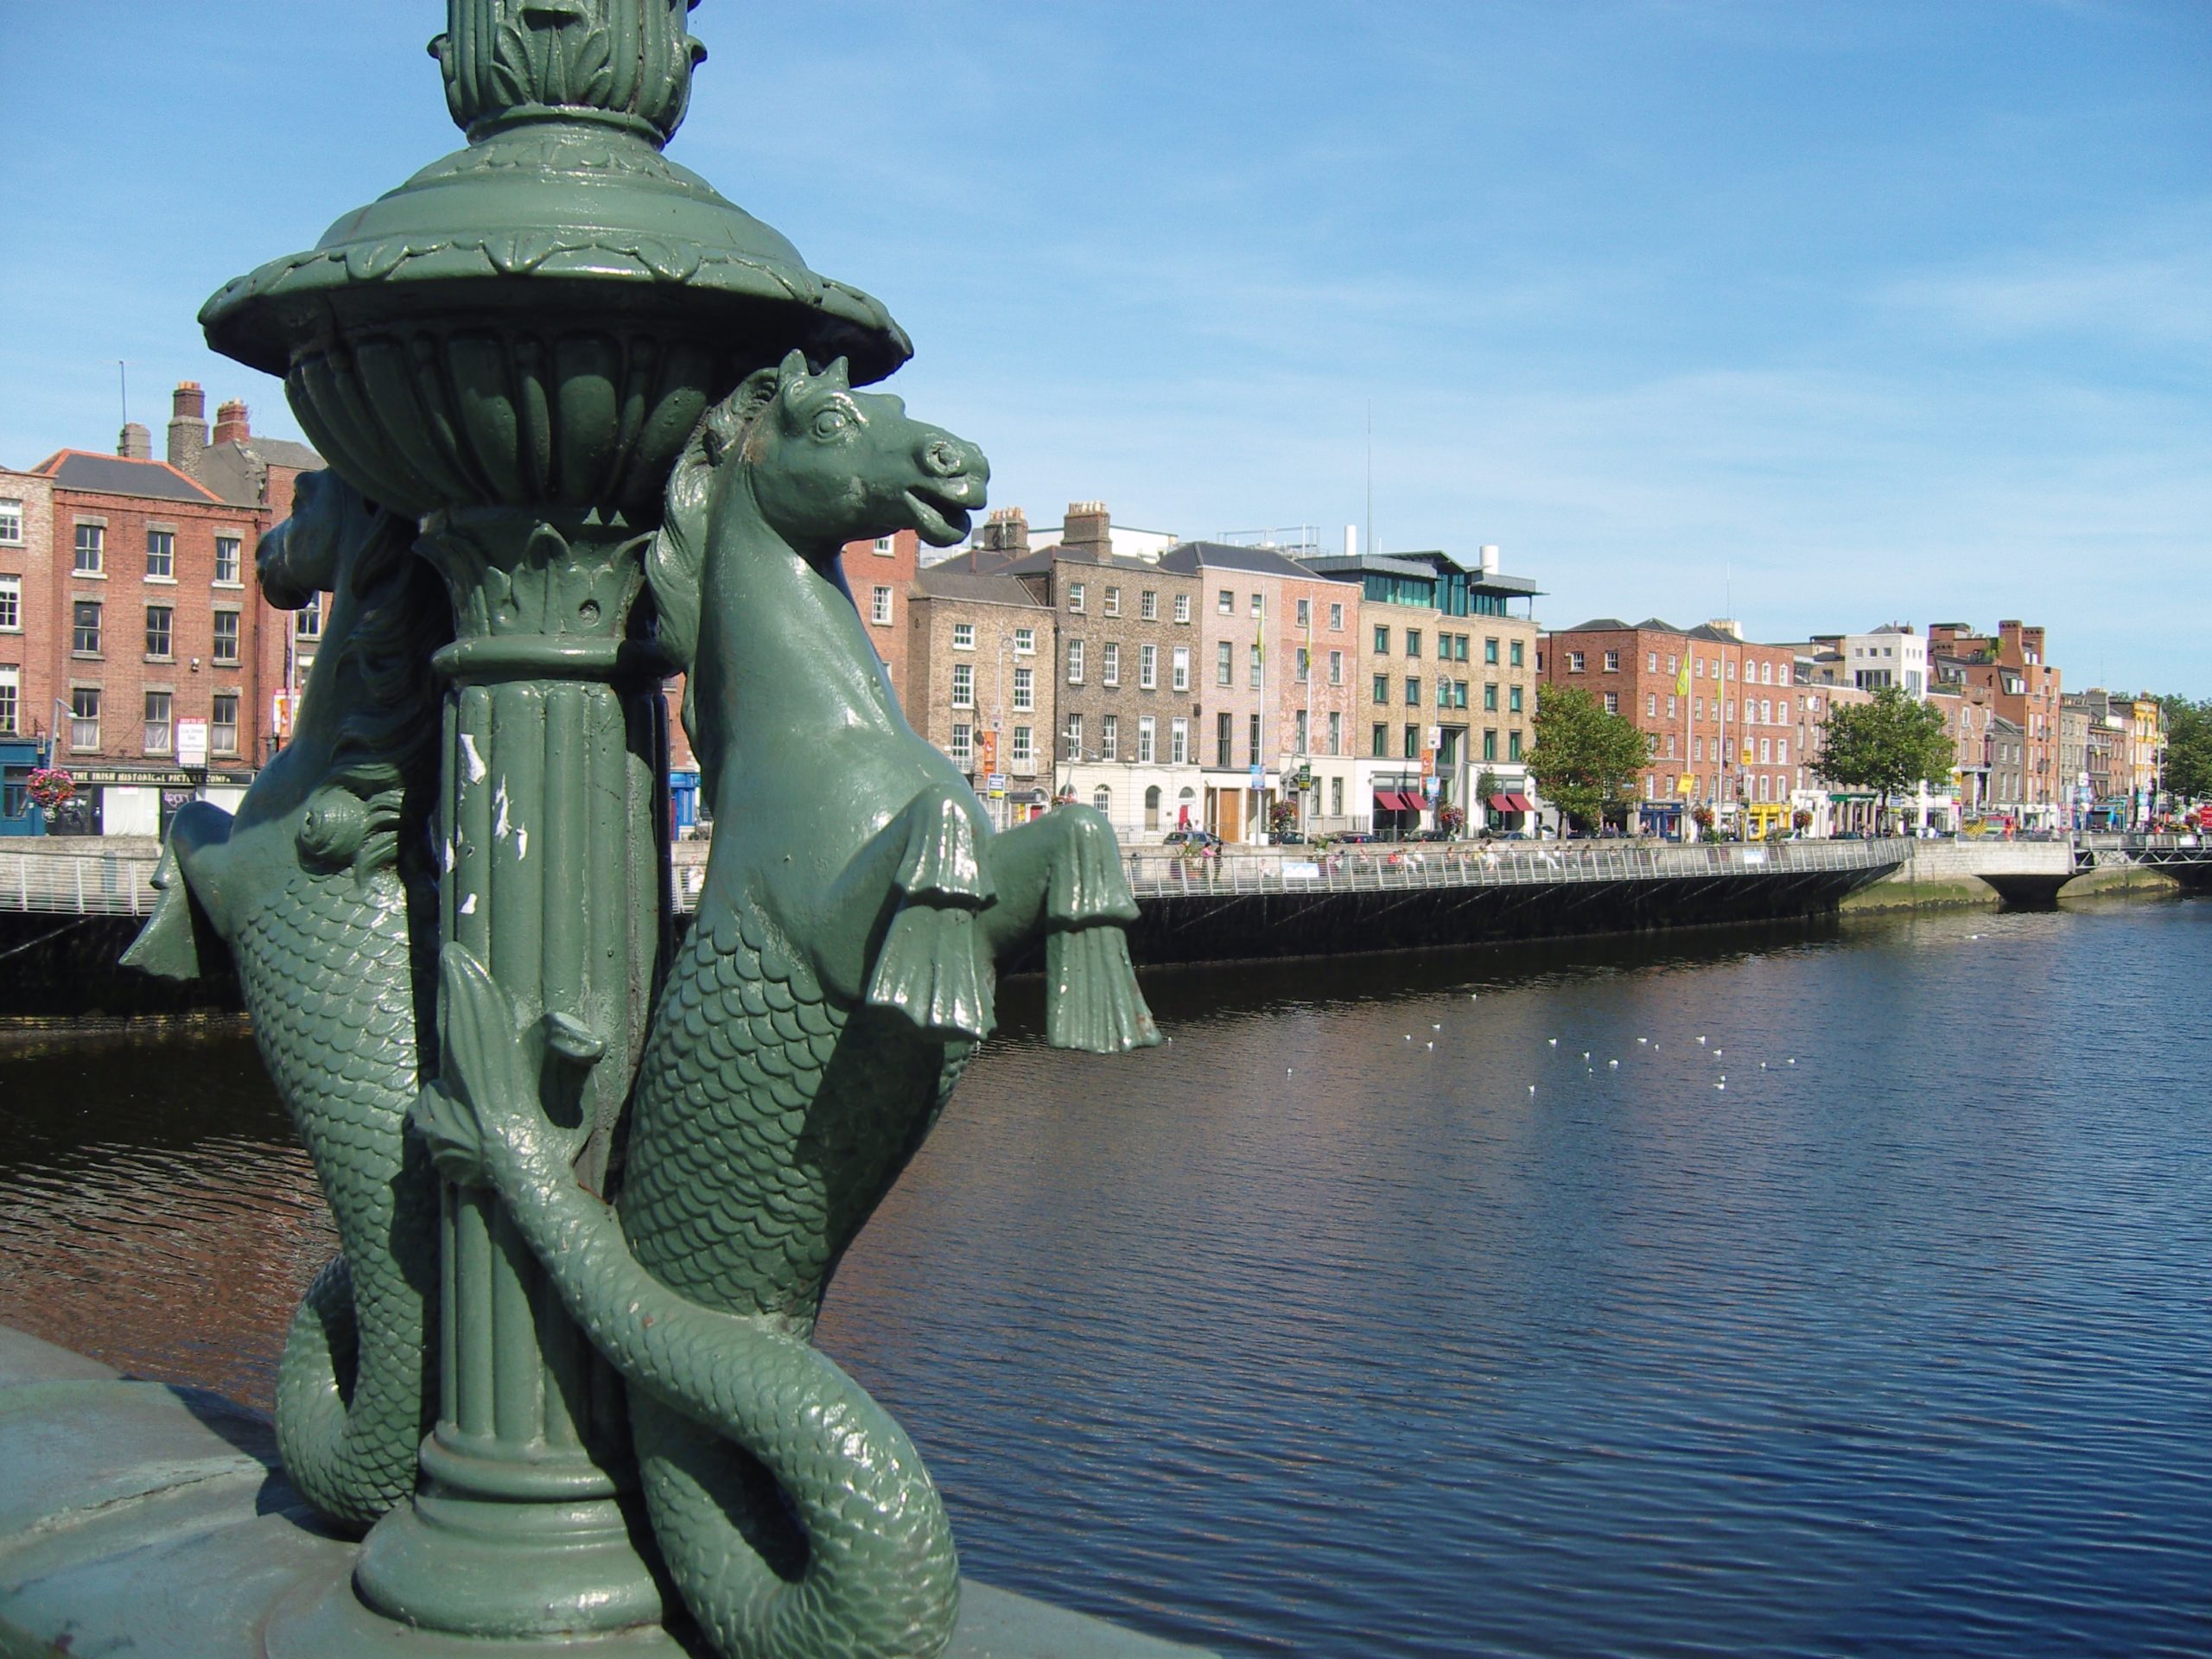 Horse mermaid statue near body of water in Dublin